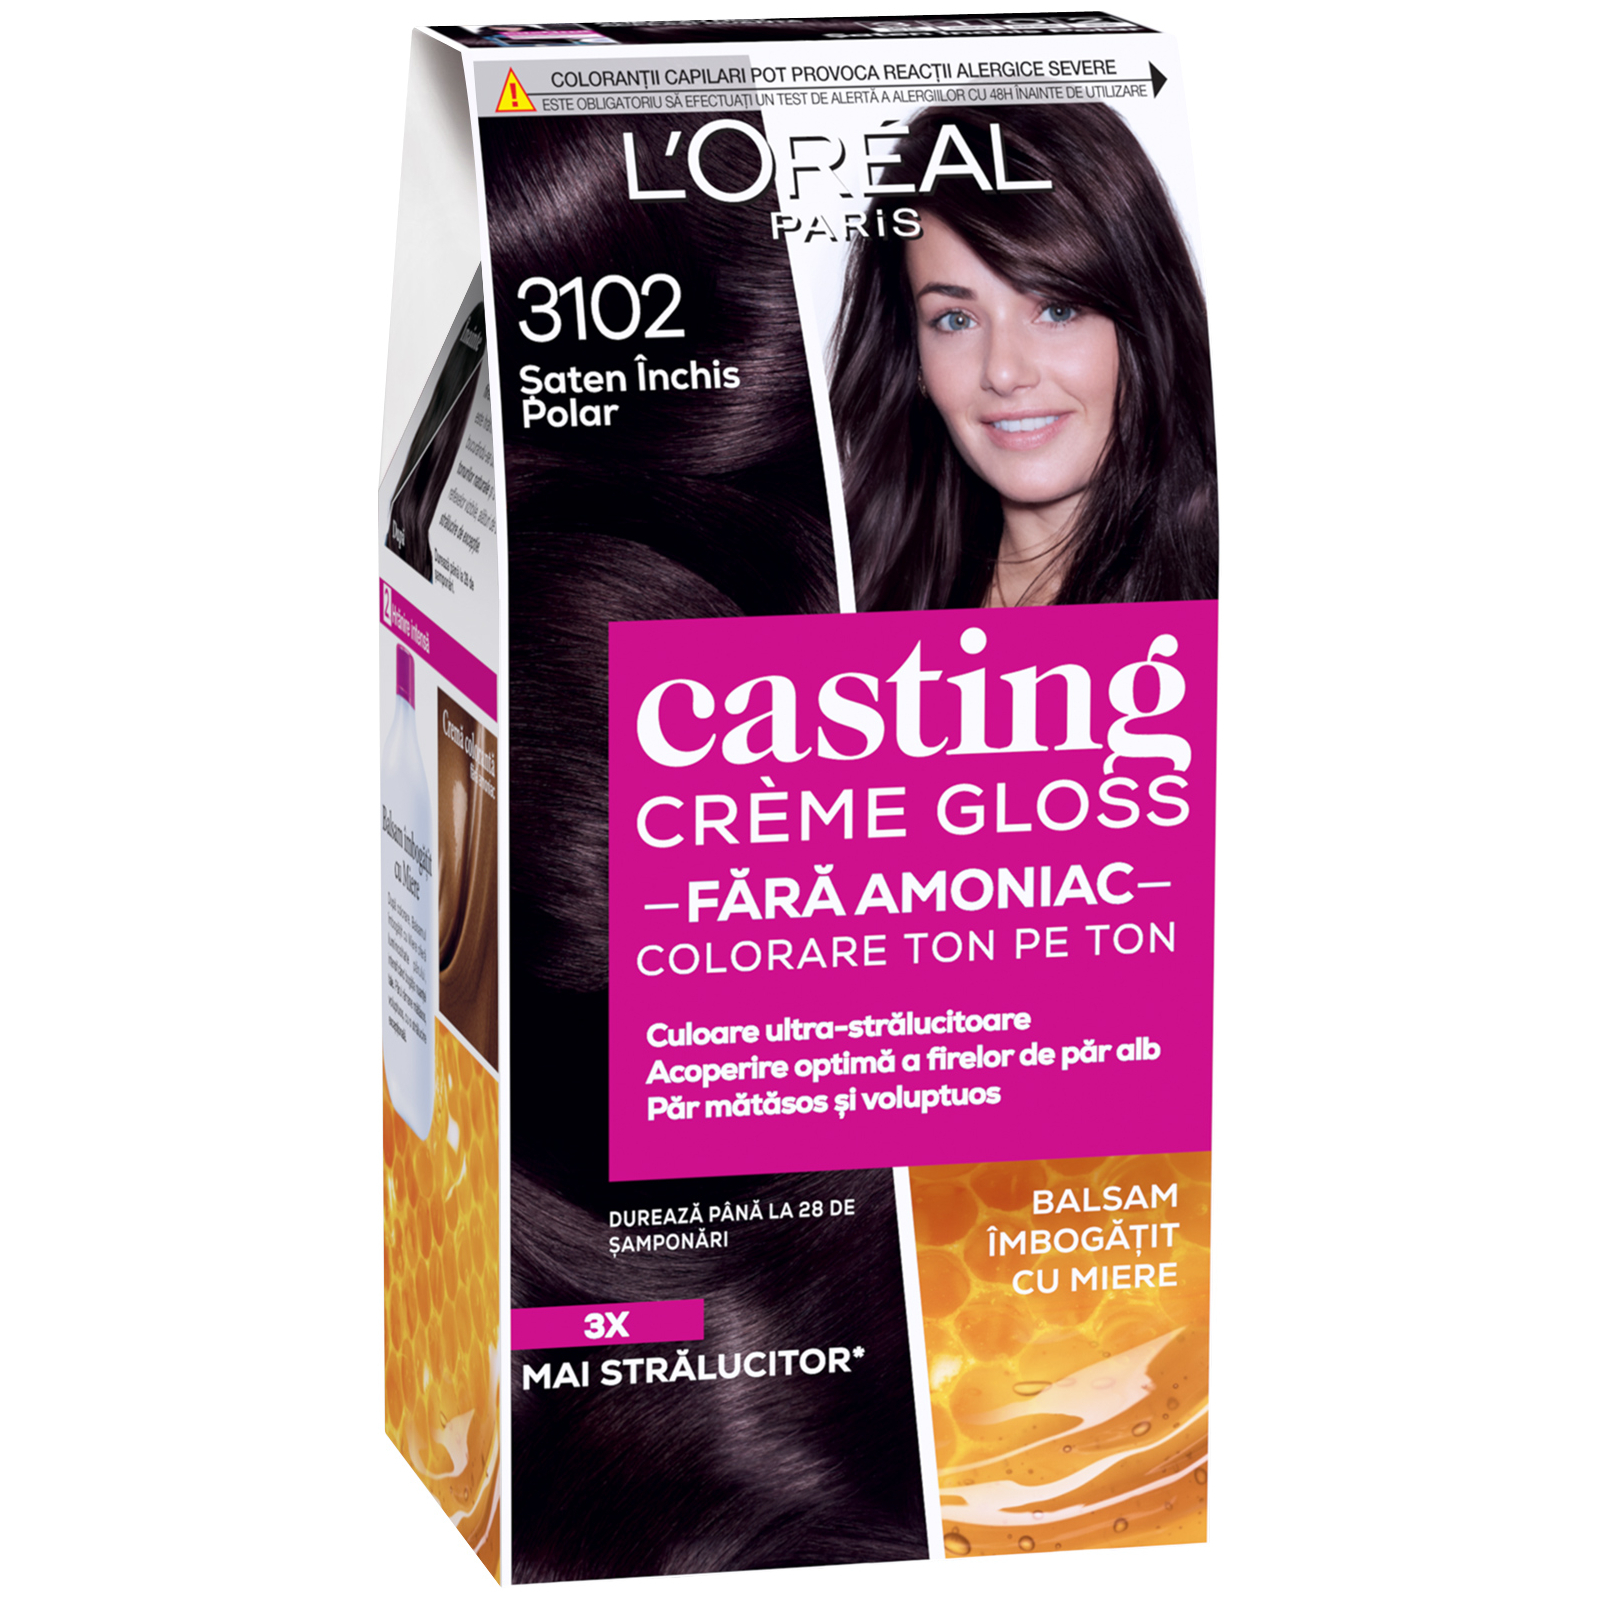 Фарба для волосся L'Oreal Paris Casting Creme Gloss 3102 - Холодний темно-каштановий 120 мл (3600523806928)